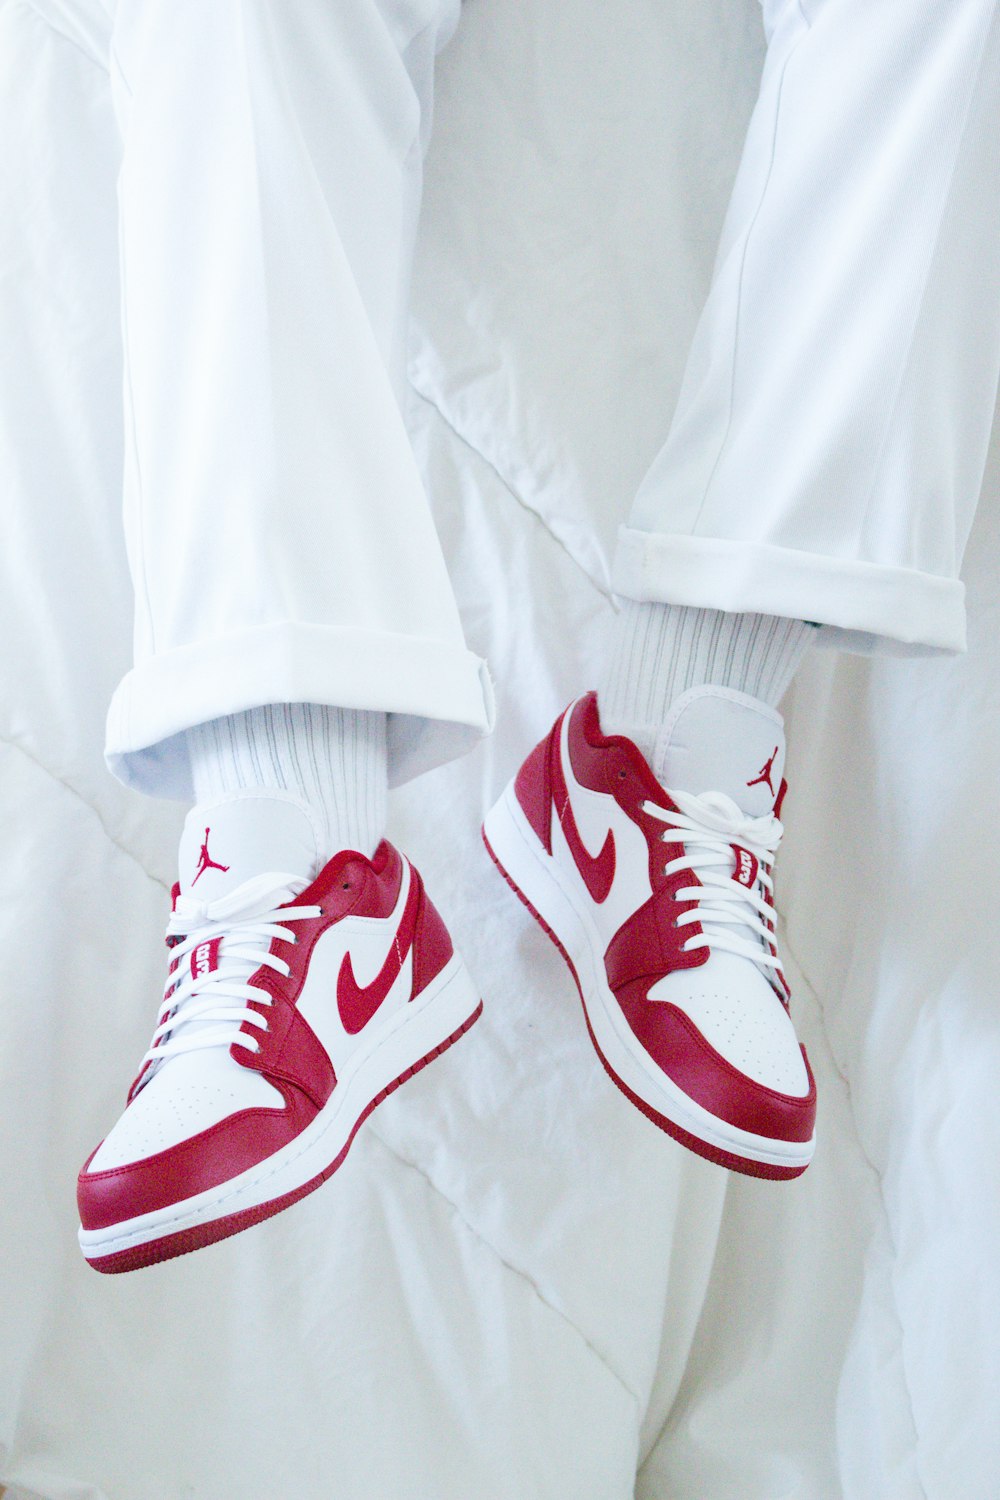 Foto tenis nike rojos y blancos – Imagen Lyon gratis en Unsplash